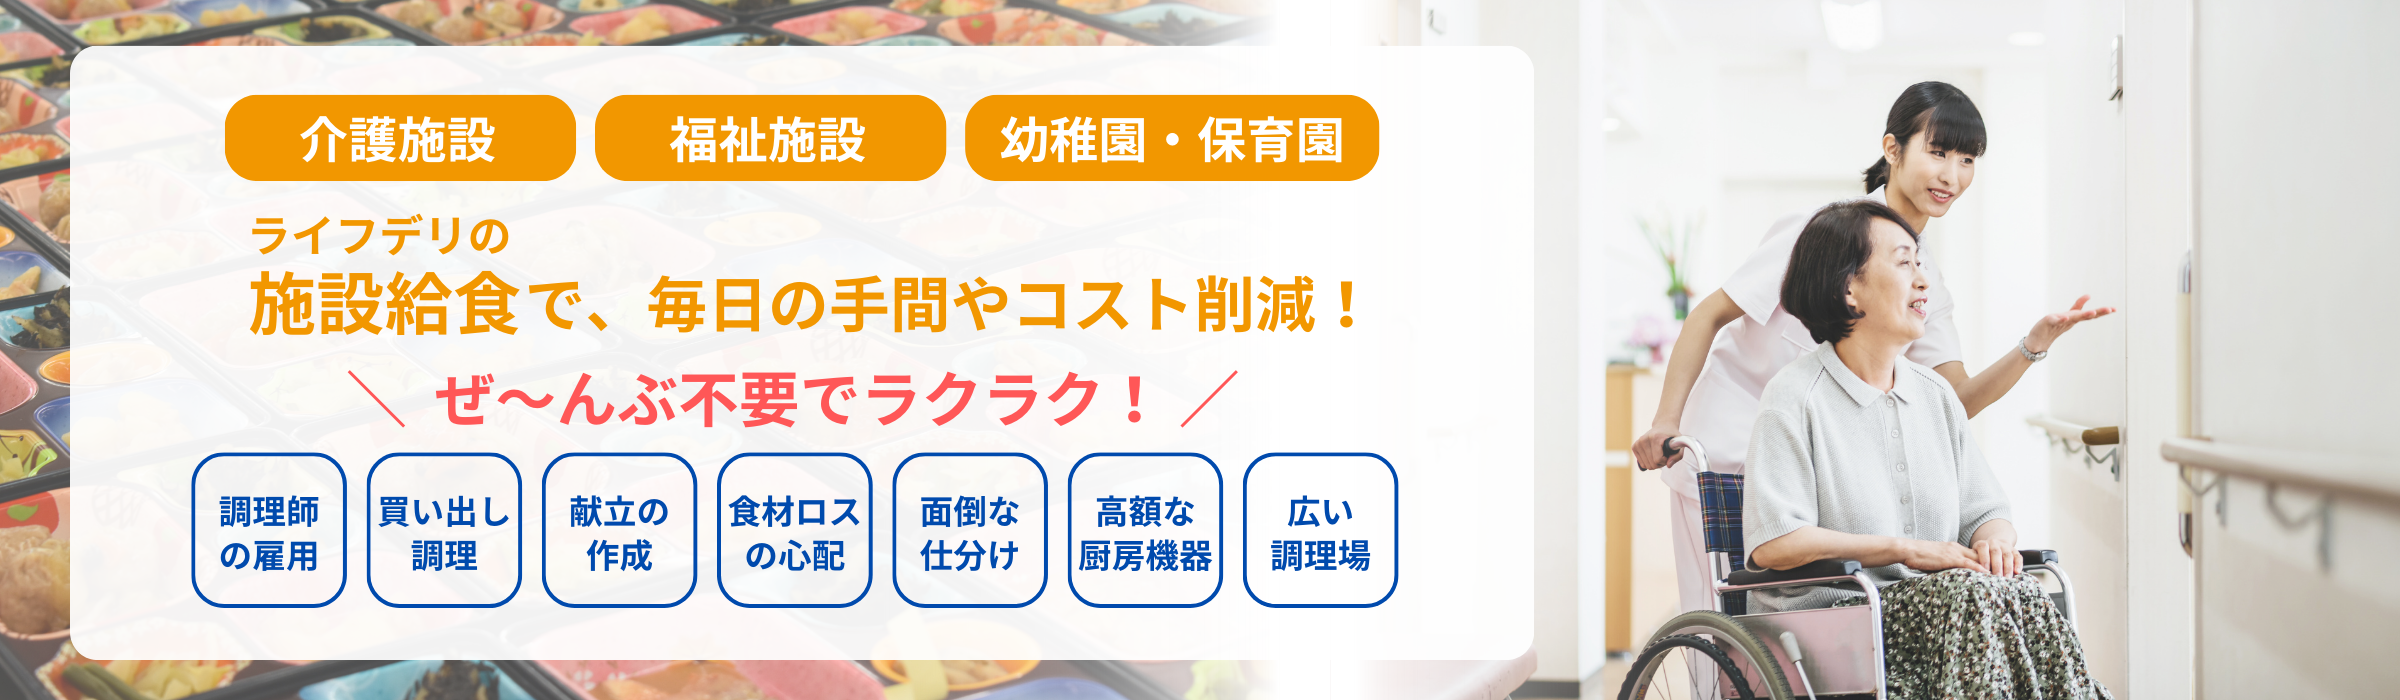 ライフデリ小田原城下町店_施設給食でのお悩みをサポートします